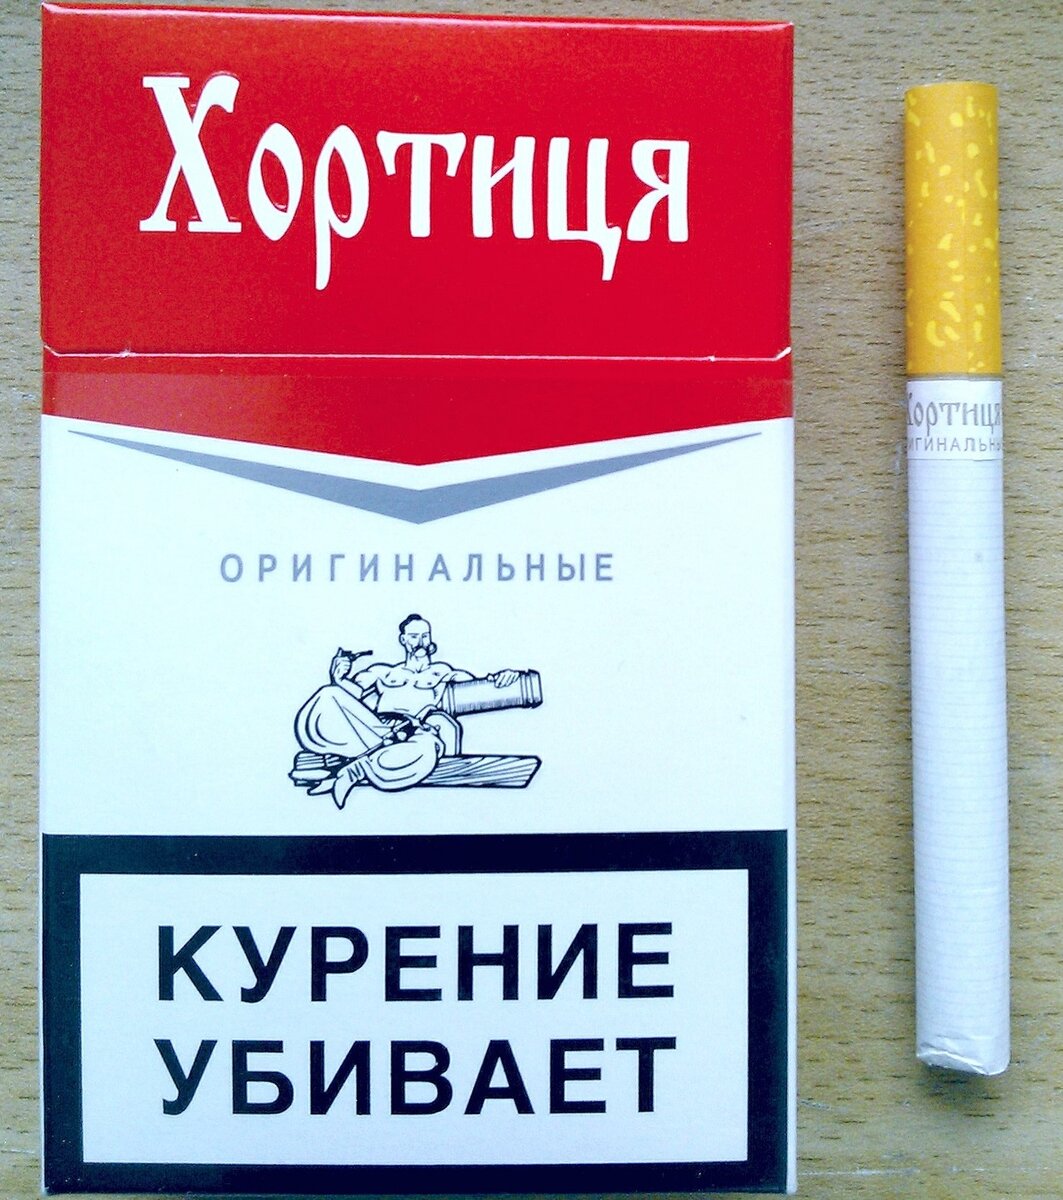 Сигареты крым купить. Сигареты Хортица красная. Сигареты 2222 Хортица. Сигареты Хортица синяя. Сигареты 2222.